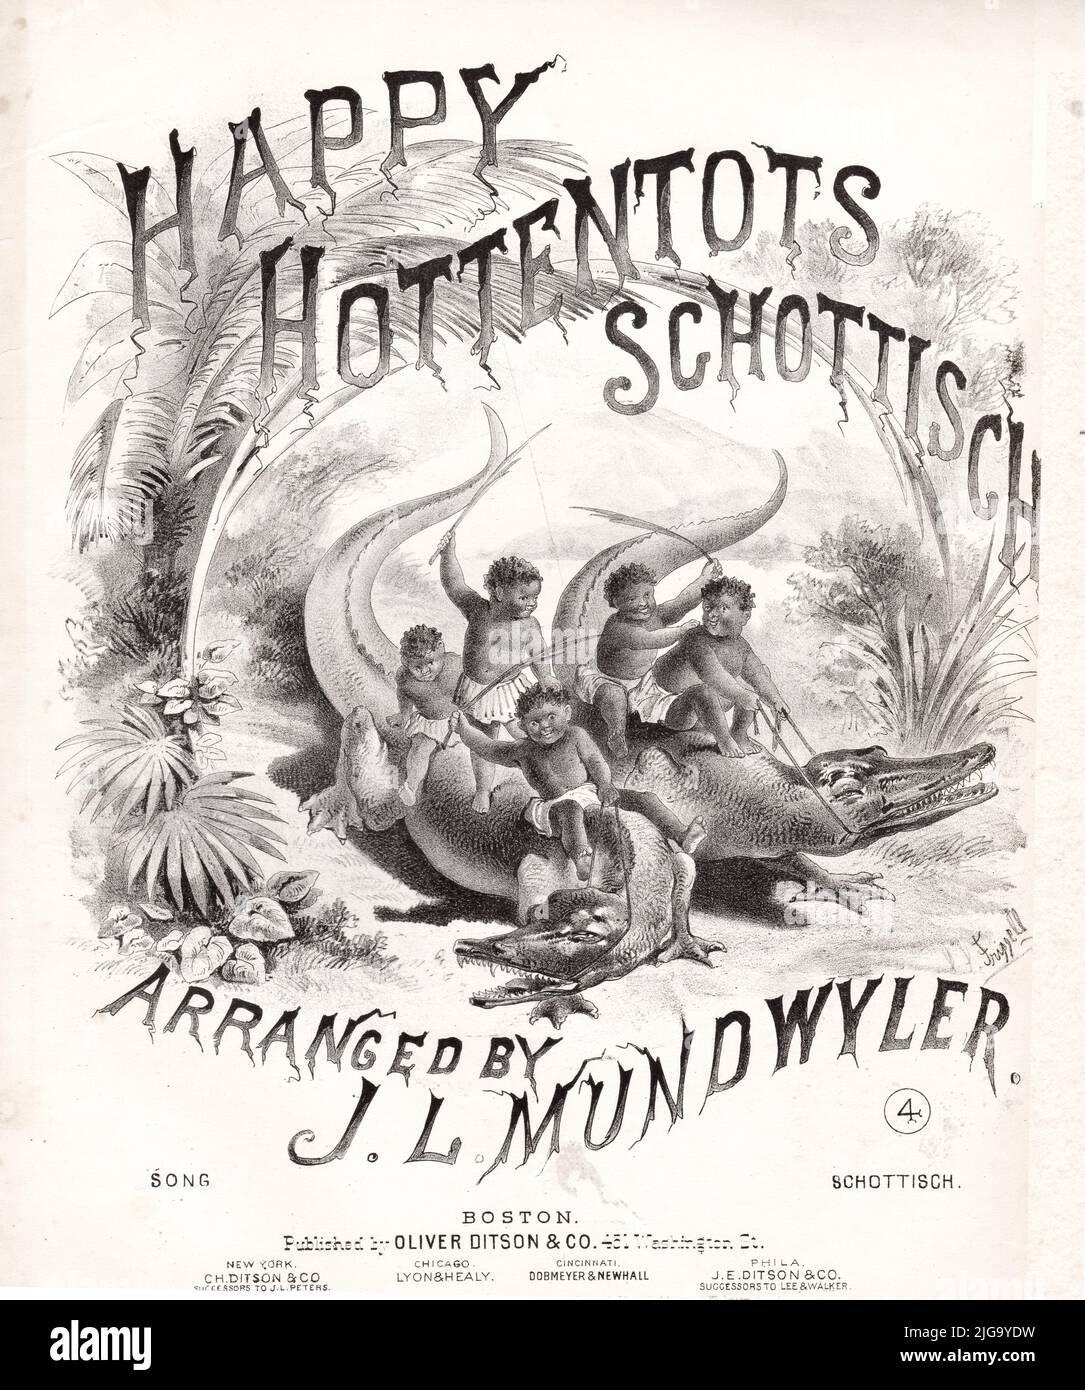 Happy Hottentots Schottisch, 1876 Sheet Music Stock Photo